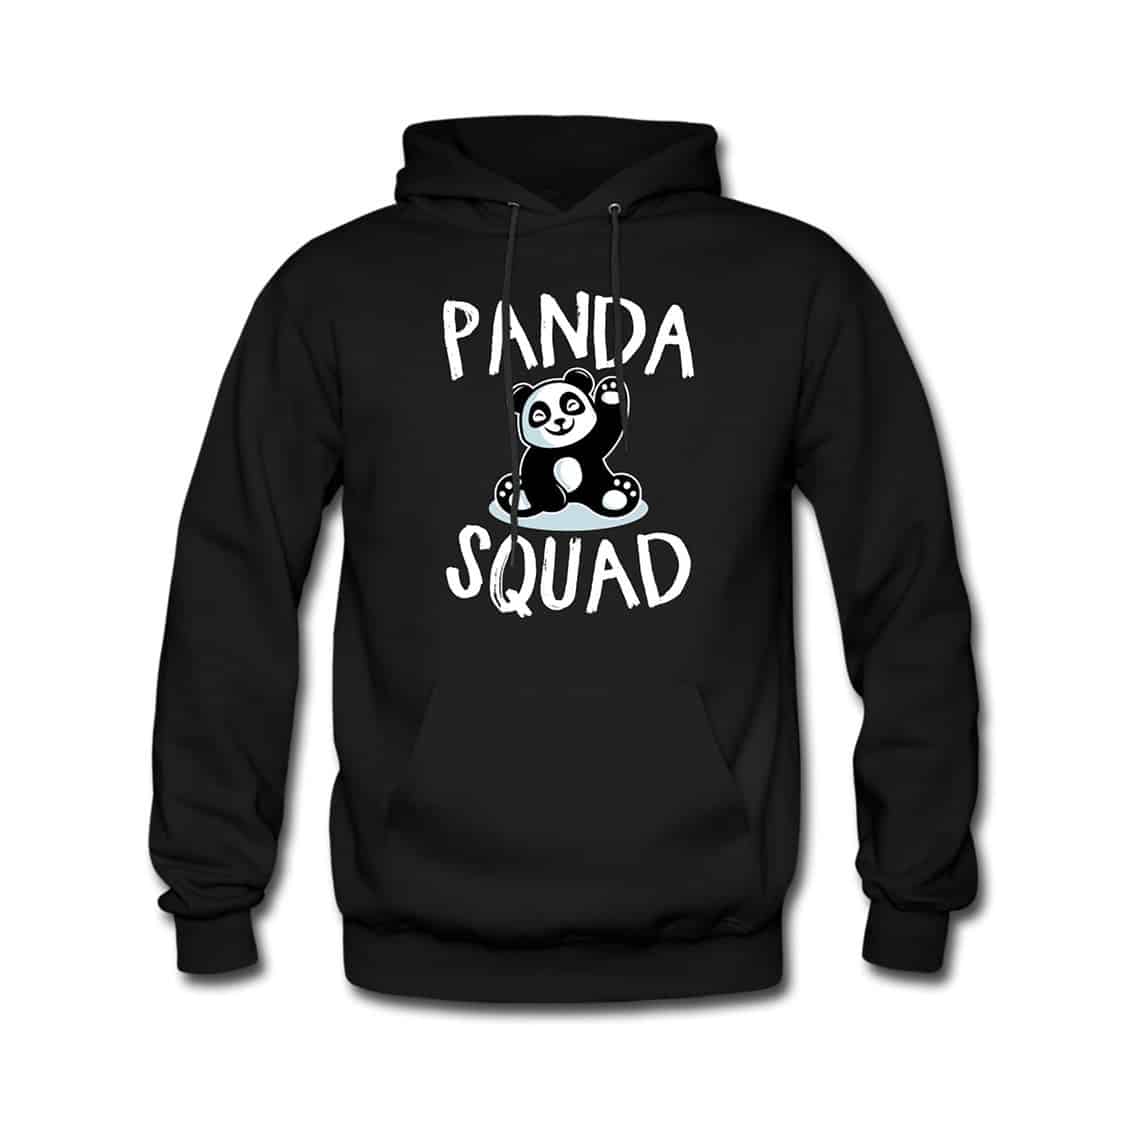 The Panda Gang Hoodie